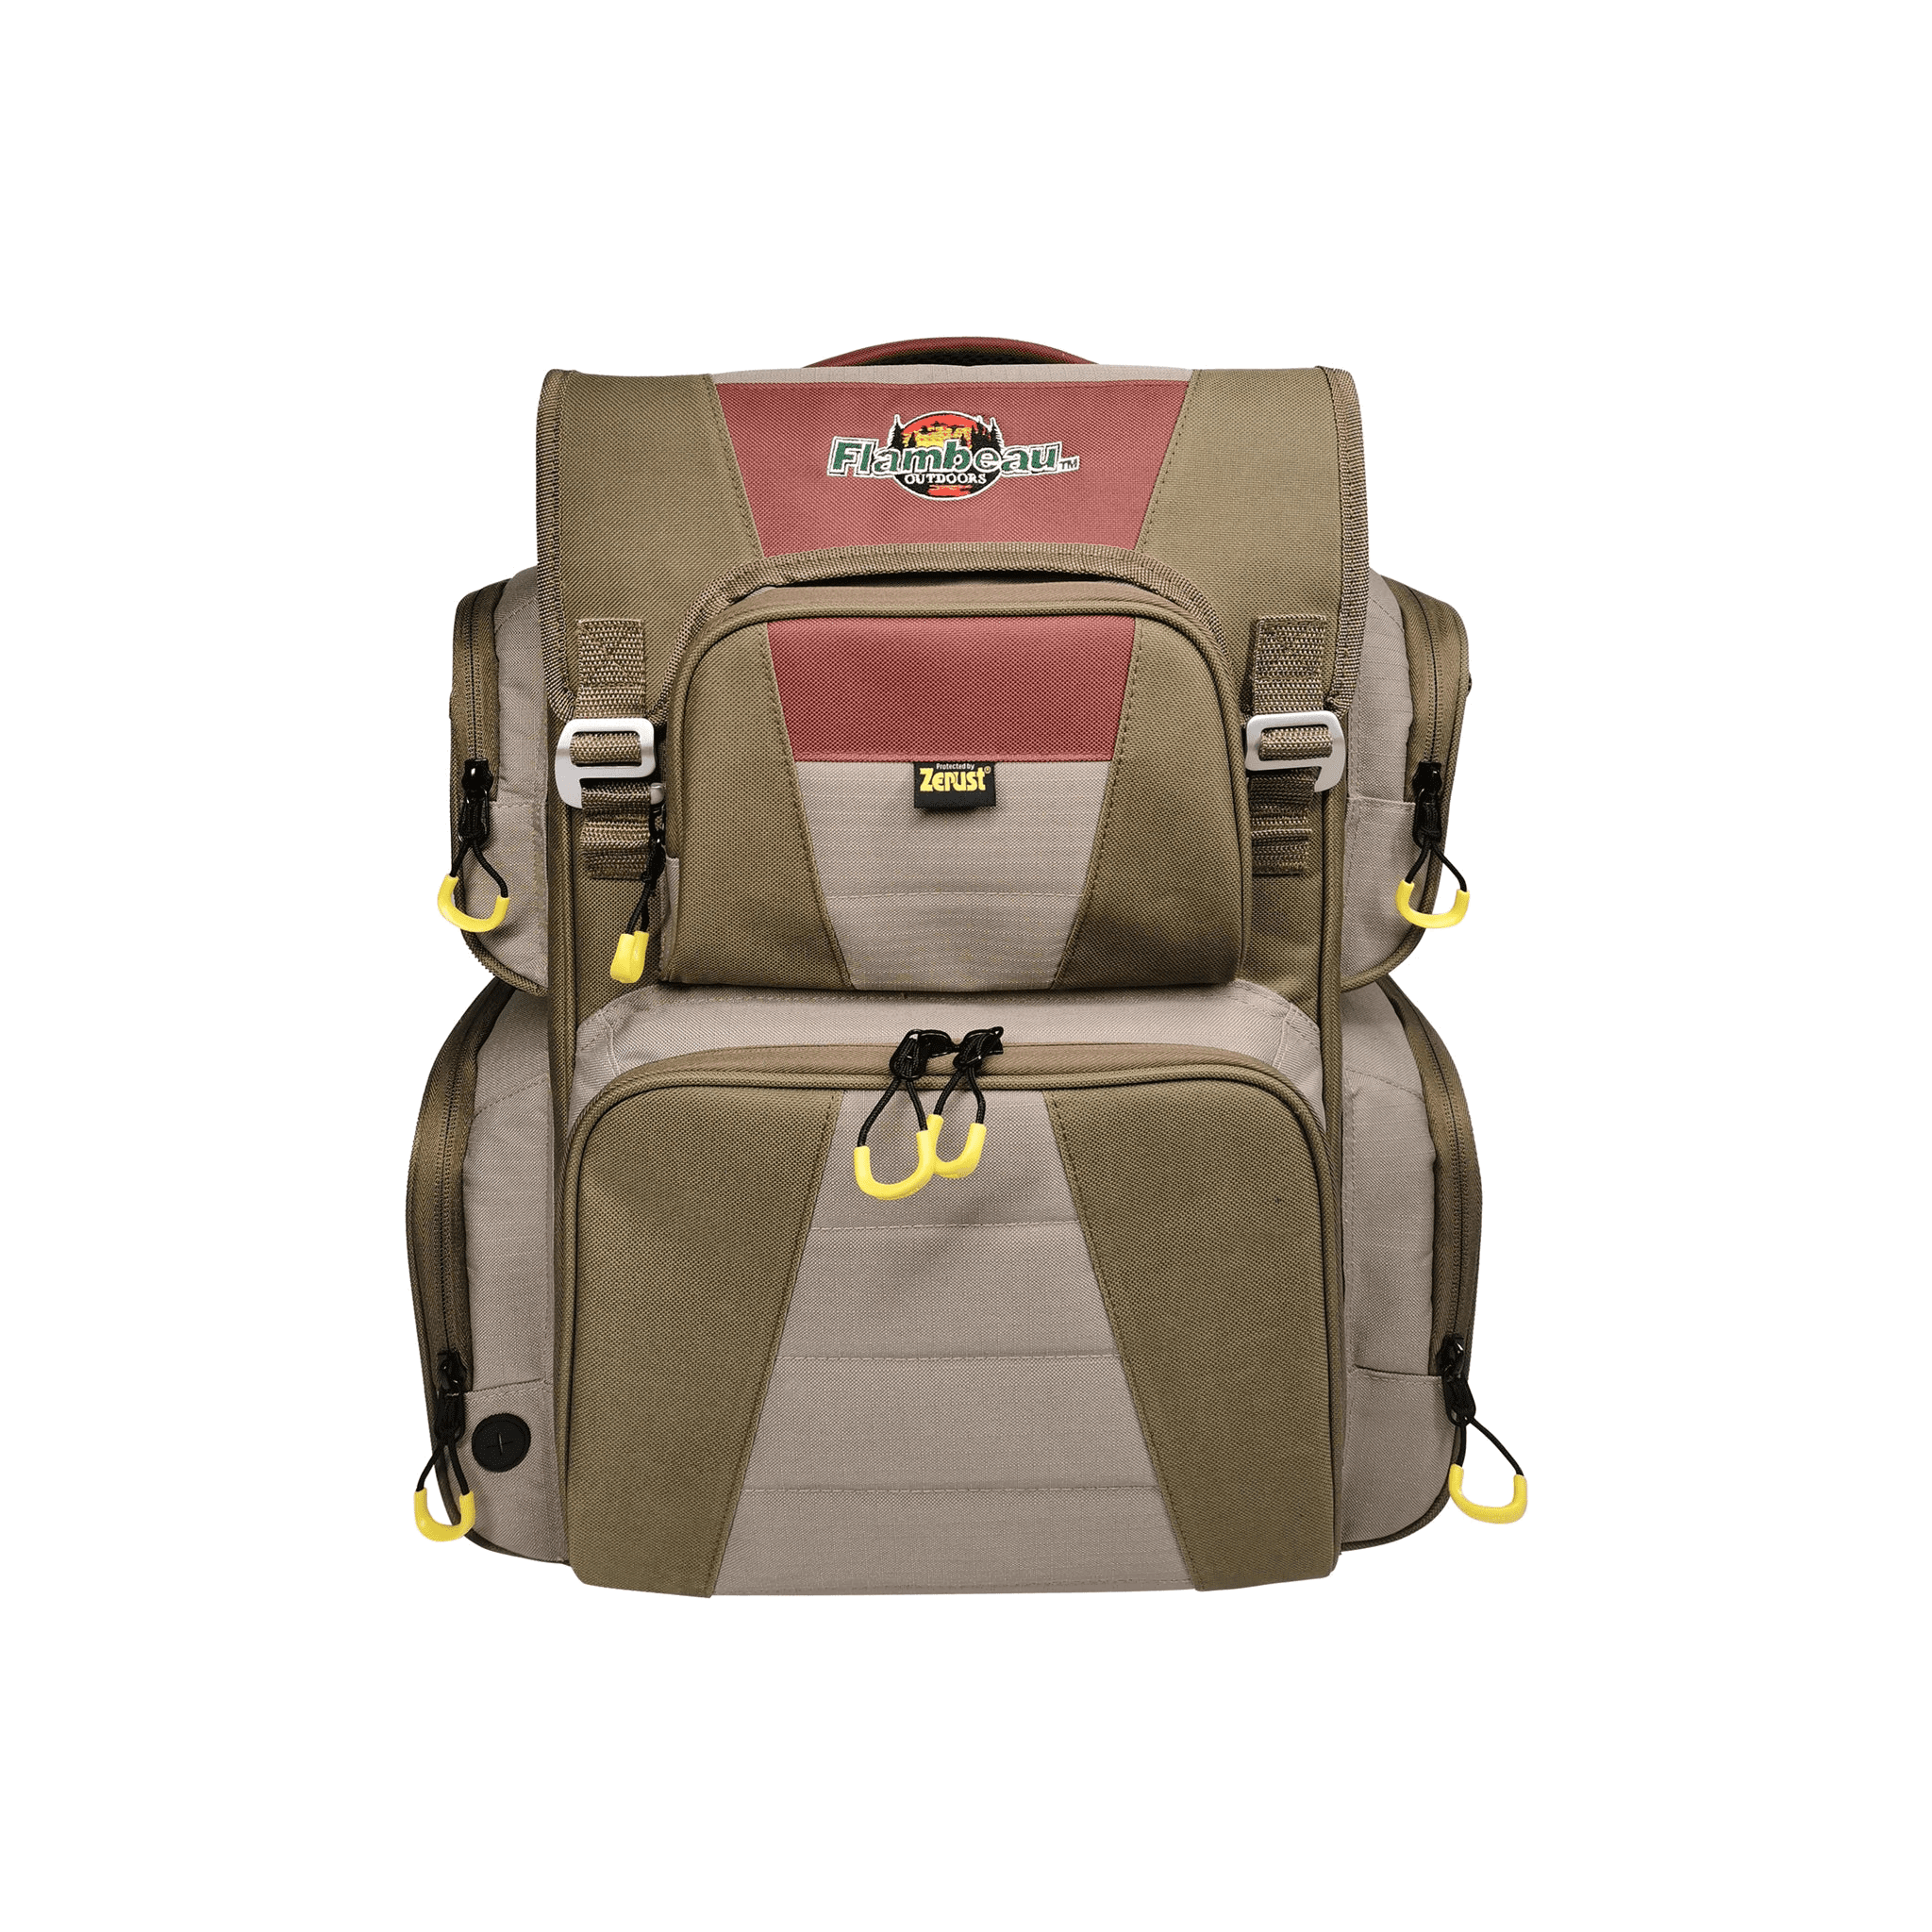 Evolution Outdoor 5007 Heritage Zerust Tackle Backpack FL40004 – WCUniforms